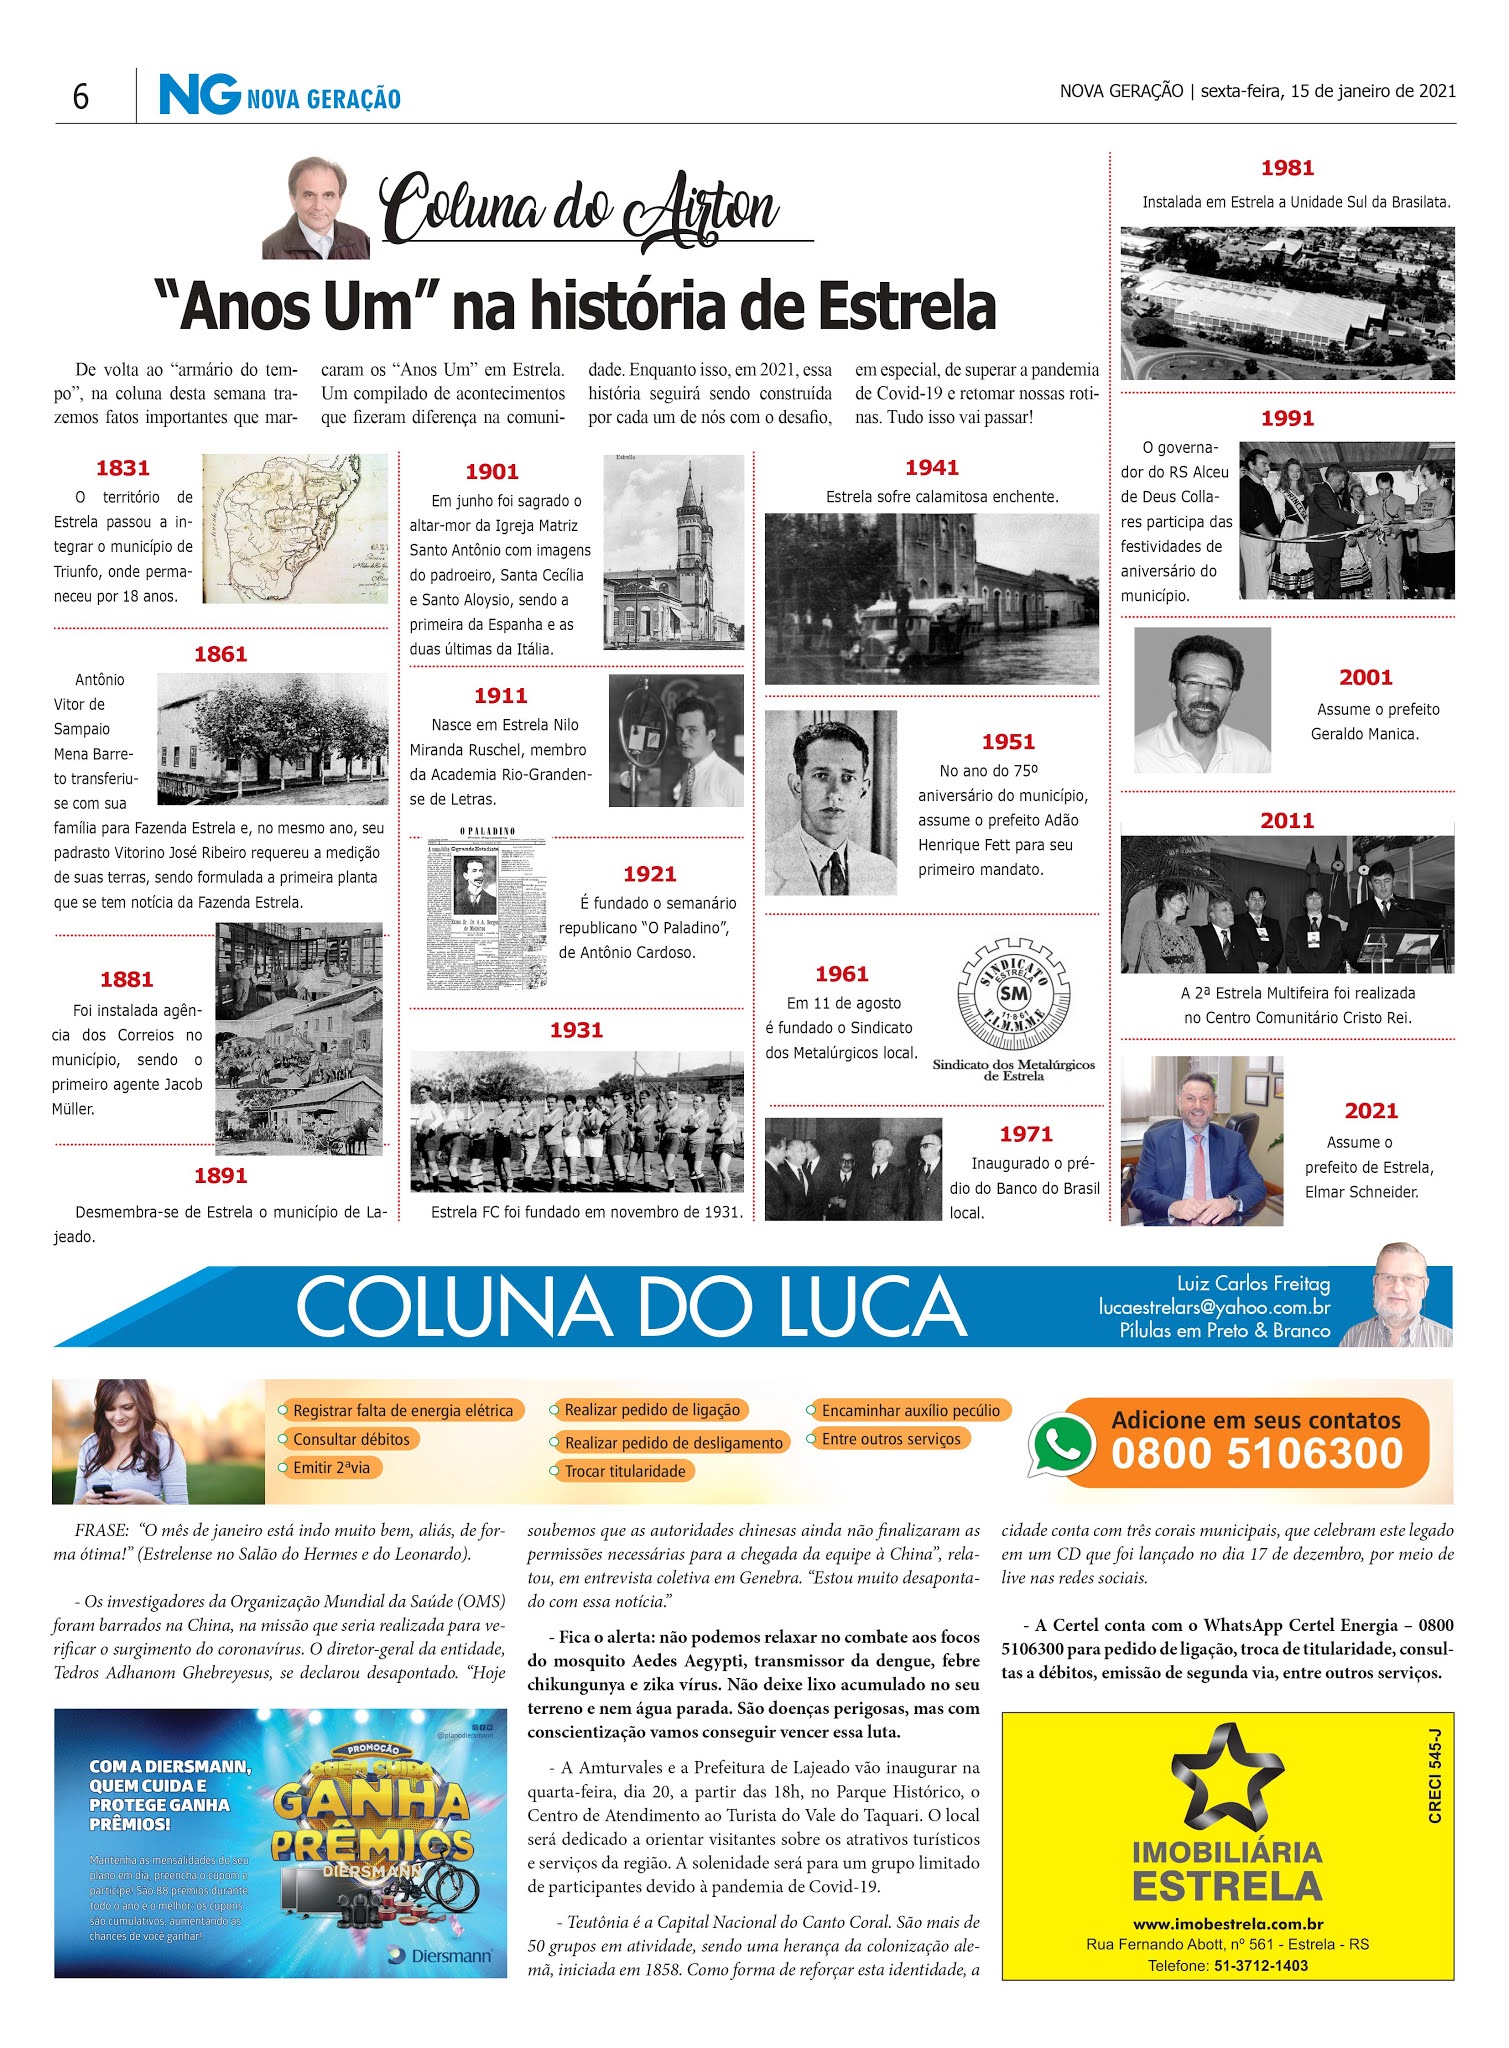 Vale vaga na final - Jornal Nova Geração